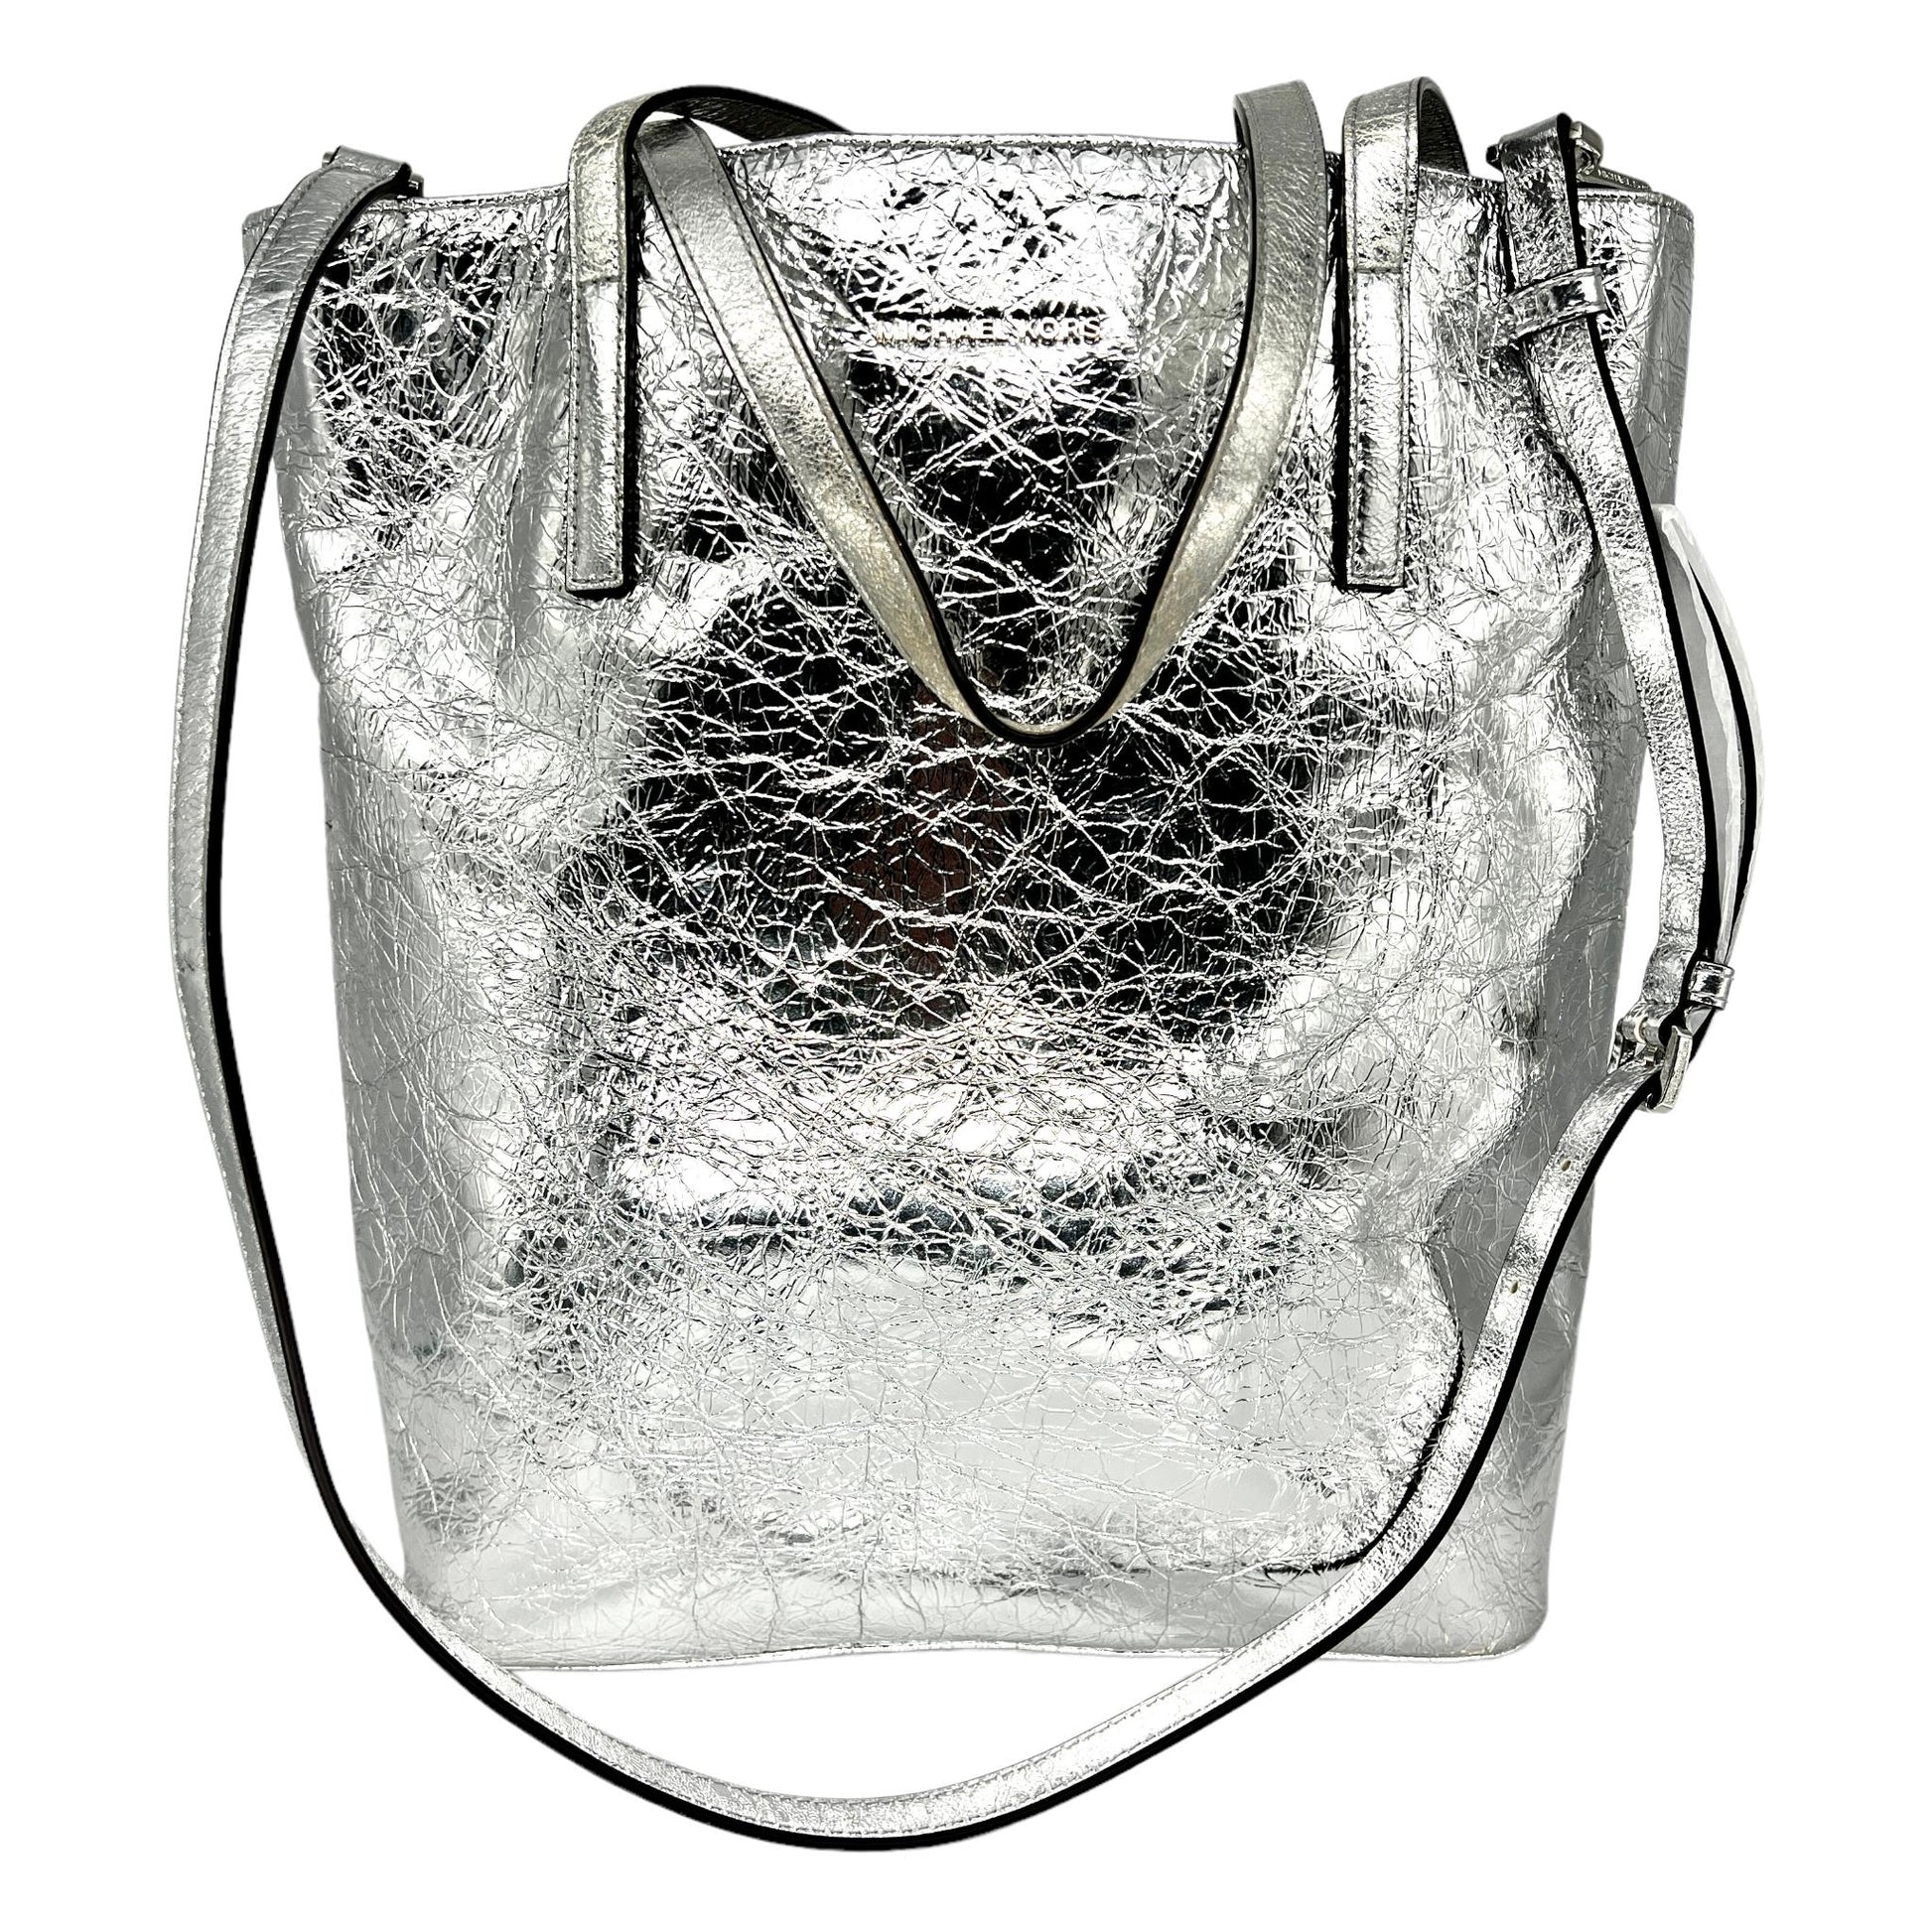 Michael Kors Silver Tote Bags